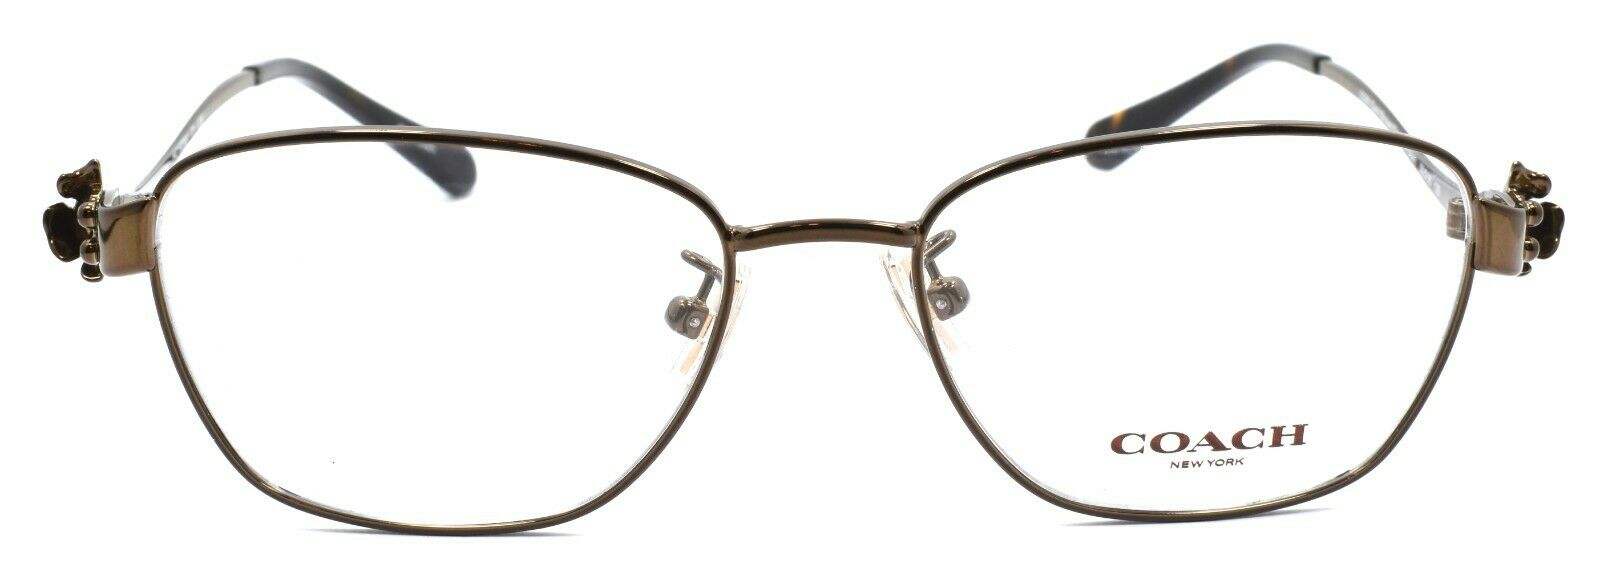 2-COACH HC5086 9298 Women's Eyeglasses Frames 50-16-135 Dark Brown / Dark Tortoise-725125969925-IKSpecs